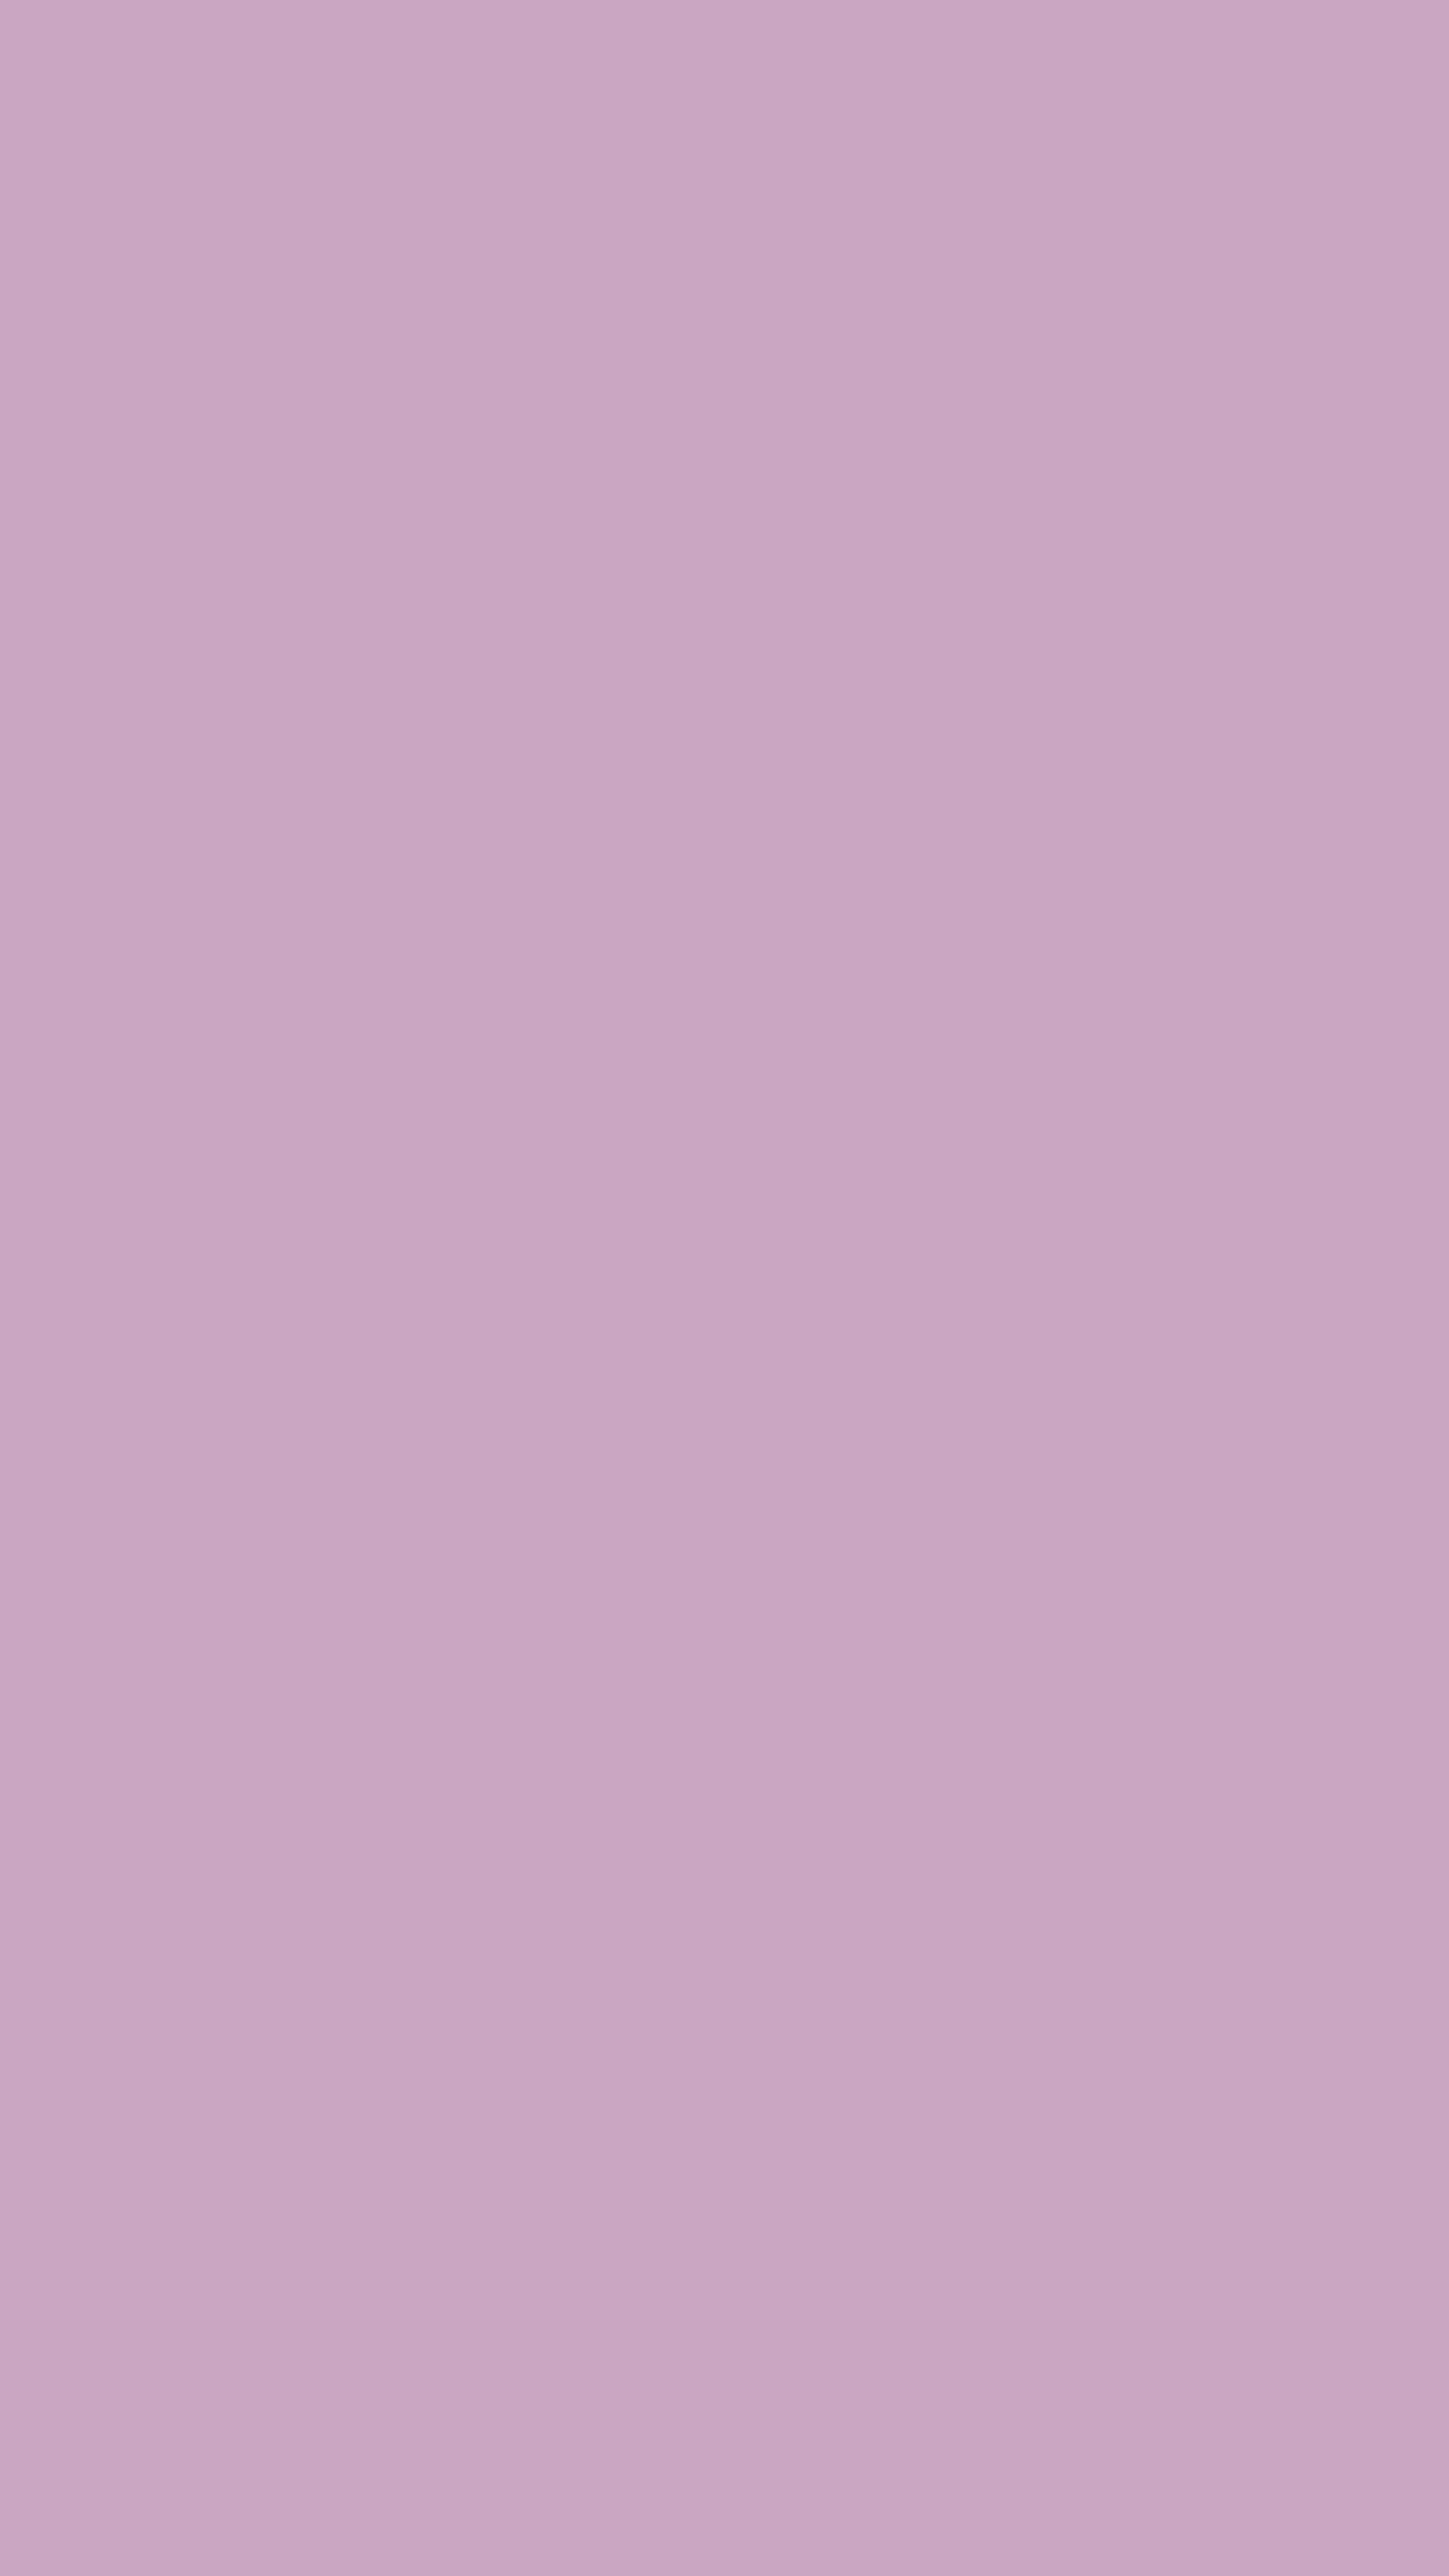 Pretty Purple Color Gradient Background Wallpaper[05209048a4b64e72821d]